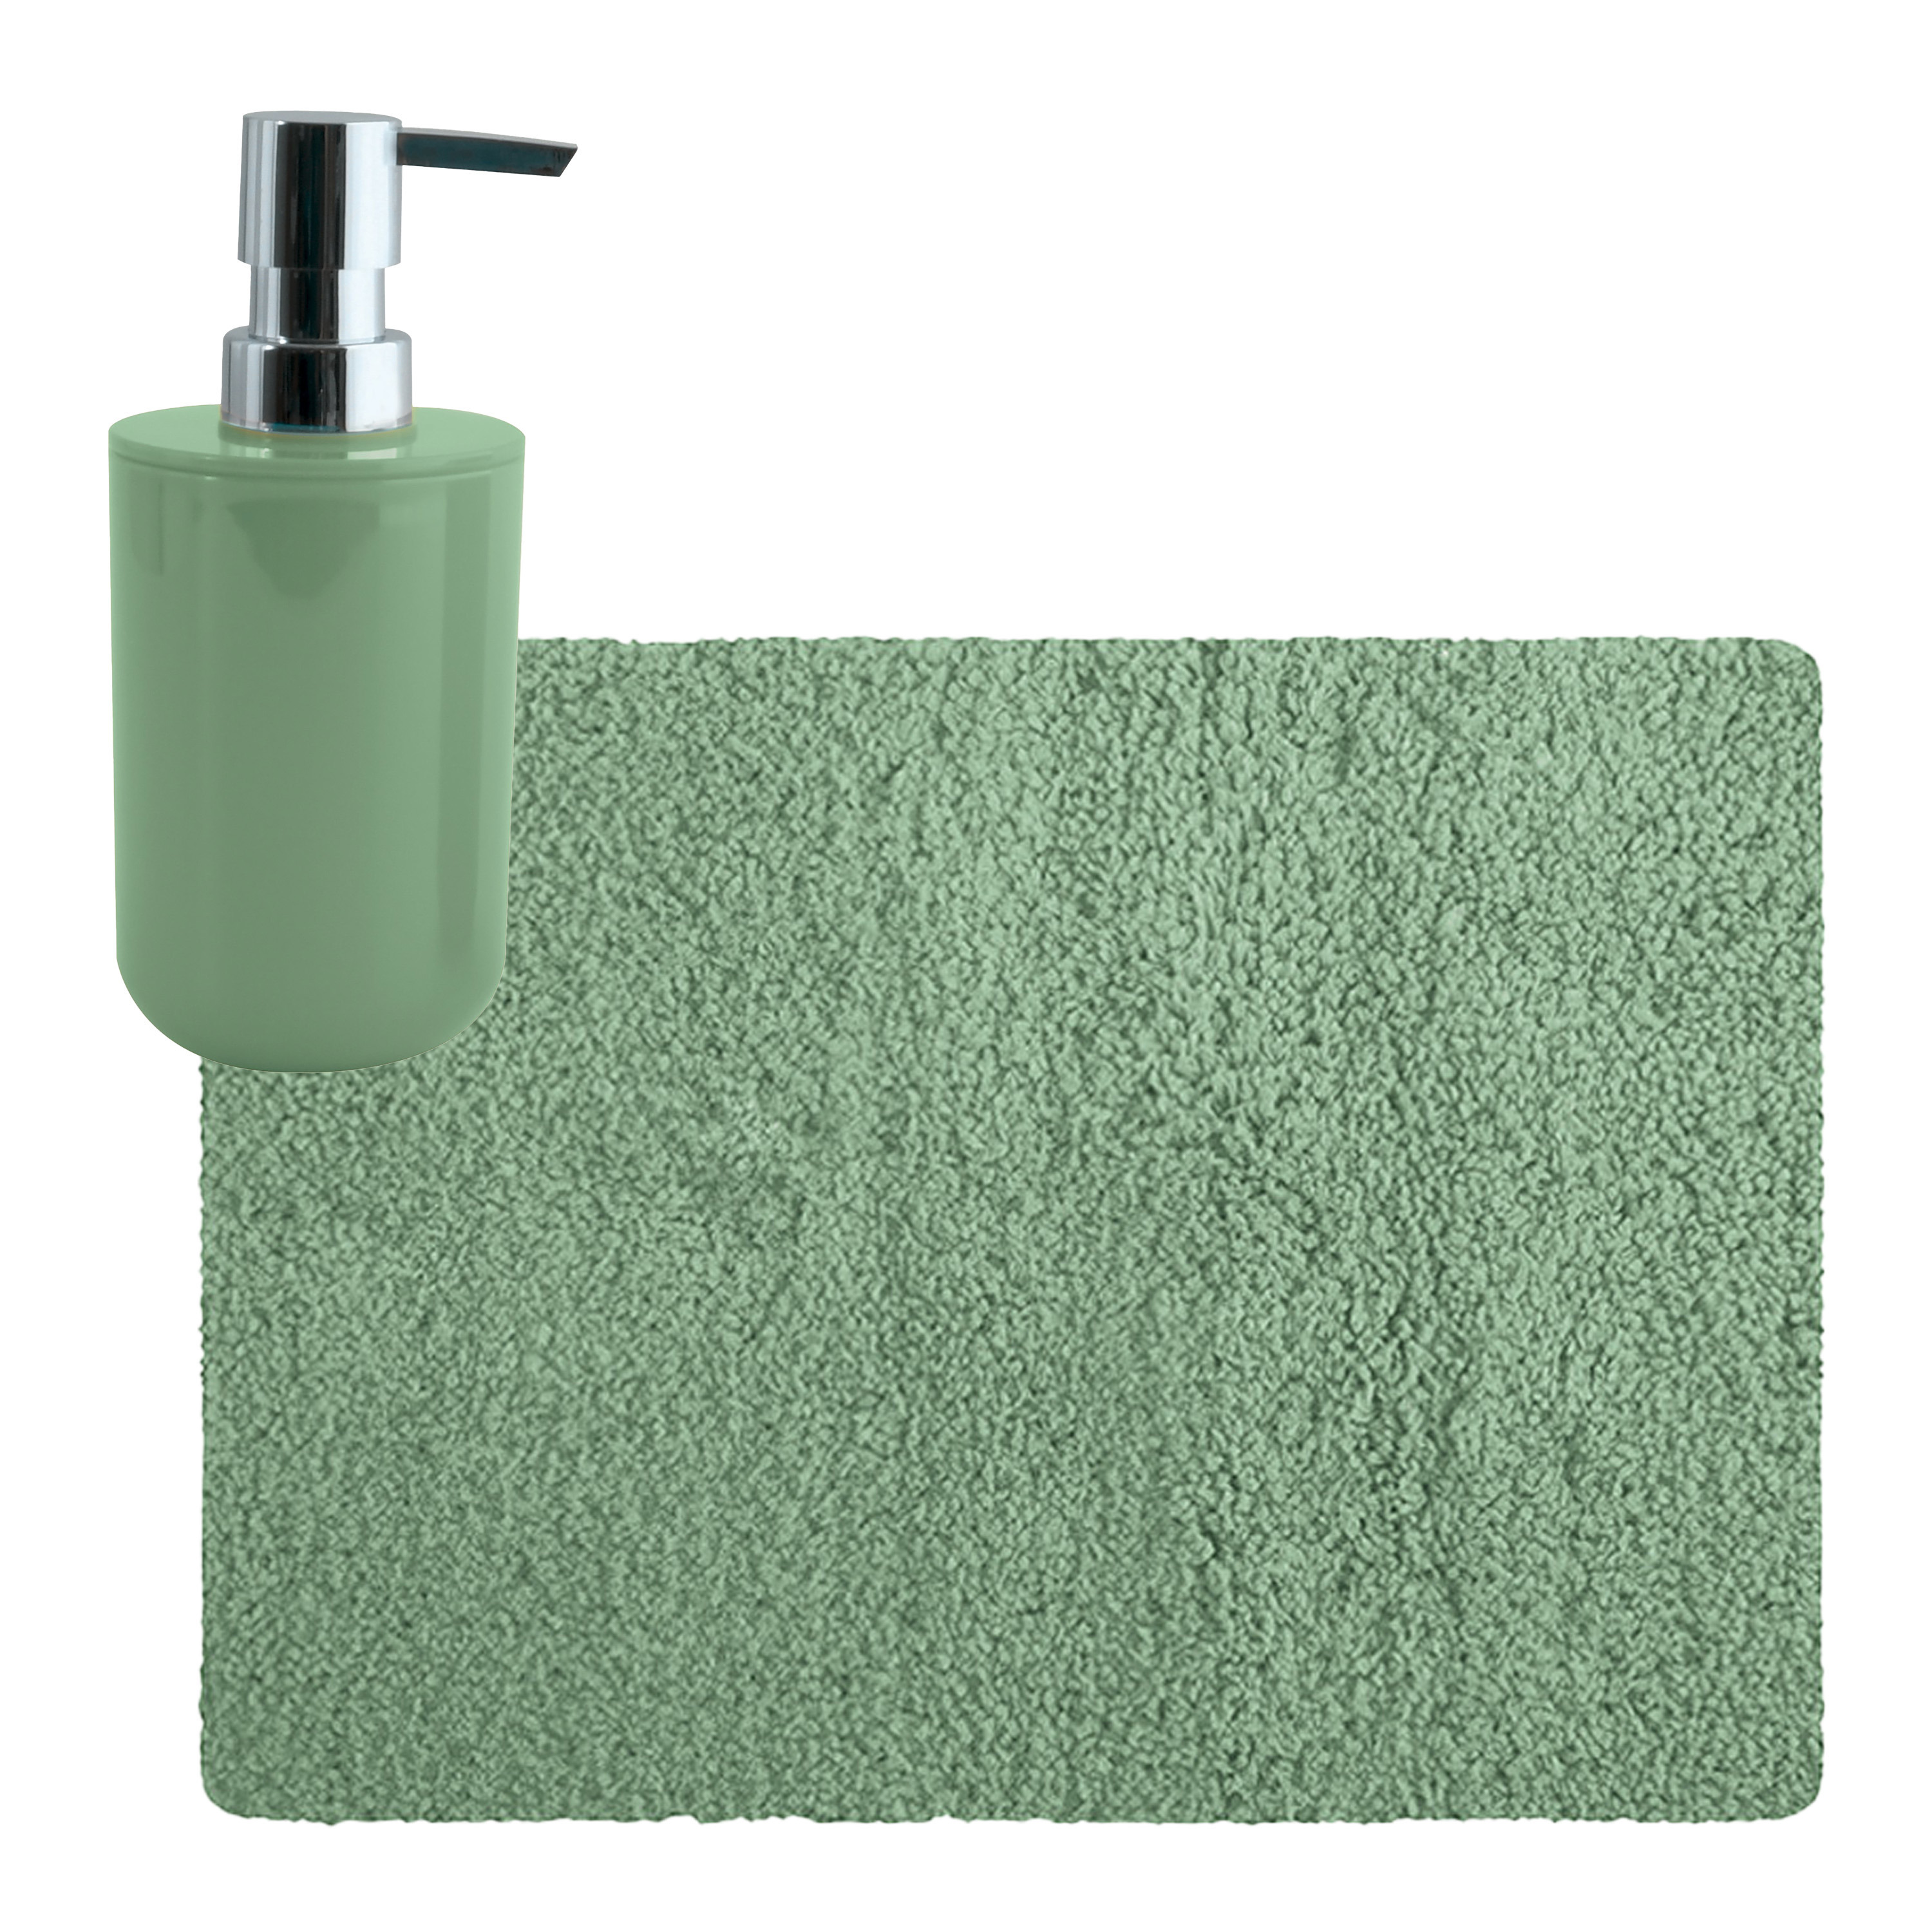 MSV badkamer droogloop tapijt Langharig 50 x 70 cm incl zeeppompje zelfde kleur groen